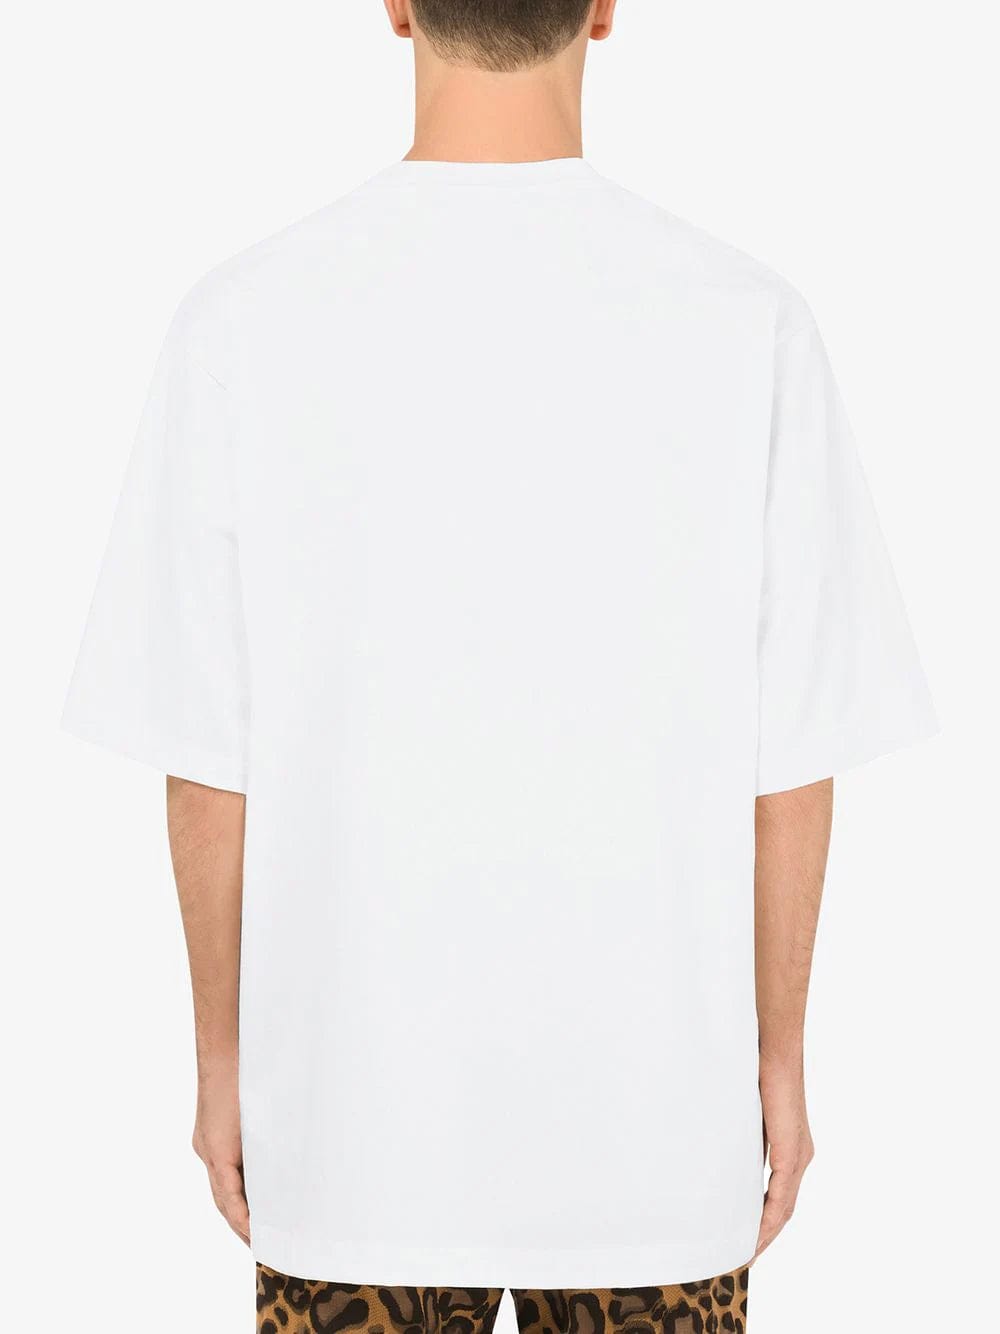 Dolce & Gabbana Box Logo T-Shirt